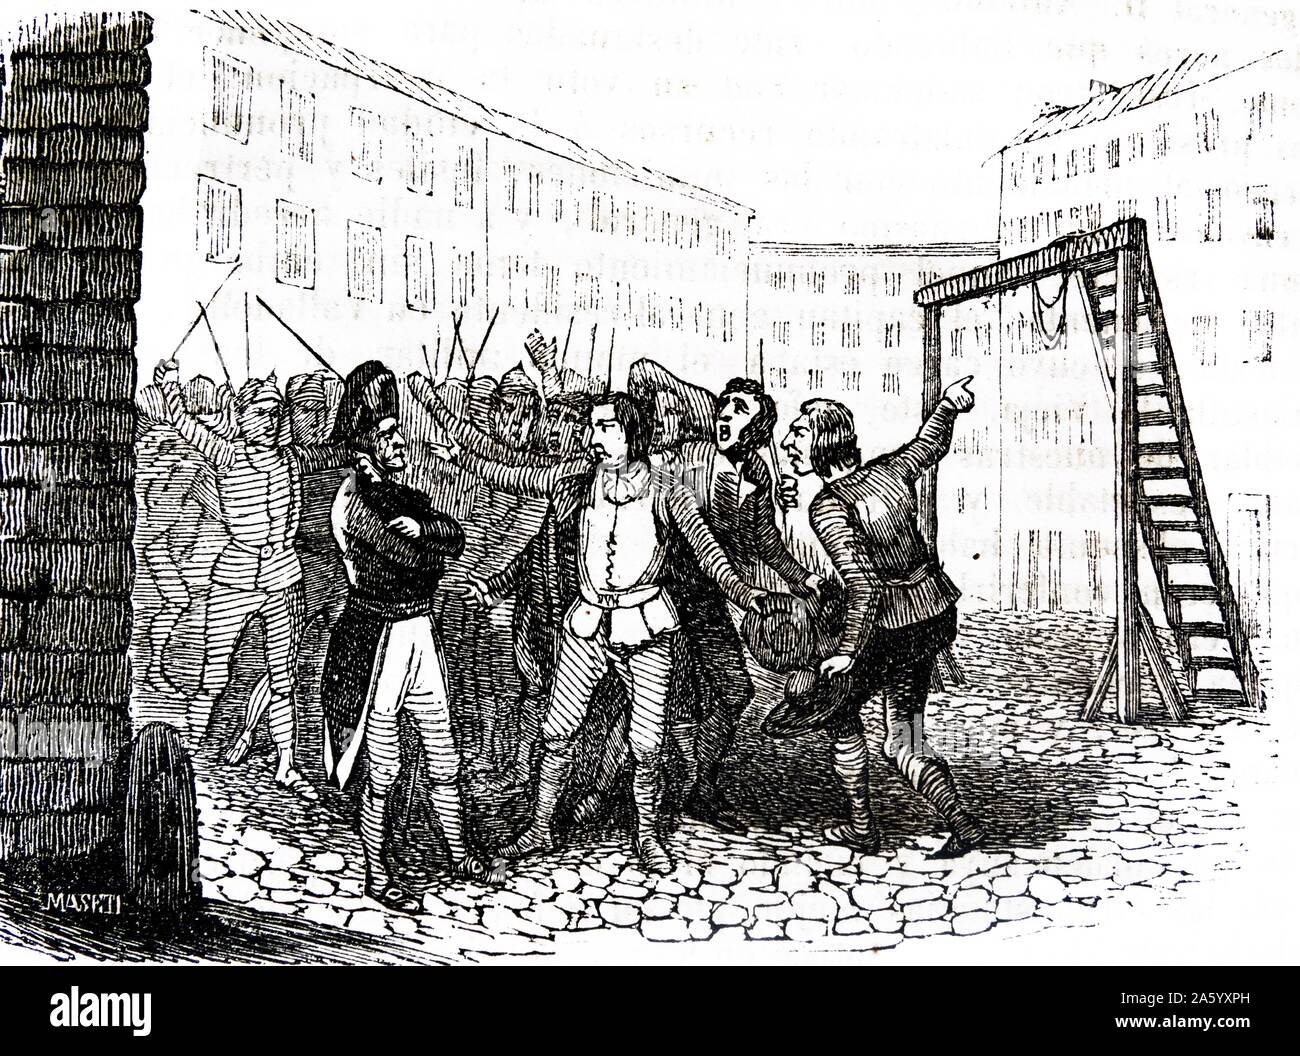 Gravure représentant des exécutions sommaires de rebelles pendant la montée de Valladolid, au cours de la guerre d'Espagne (1807-1814) fut un conflit militaire entre l'Empire de Napoléon et les alliés de l'Espagne, l'Angleterre et le Portugal pour le contrôle de la péninsule ibérique pendant les guerres napoléoniennes. Datée 1809 Banque D'Images